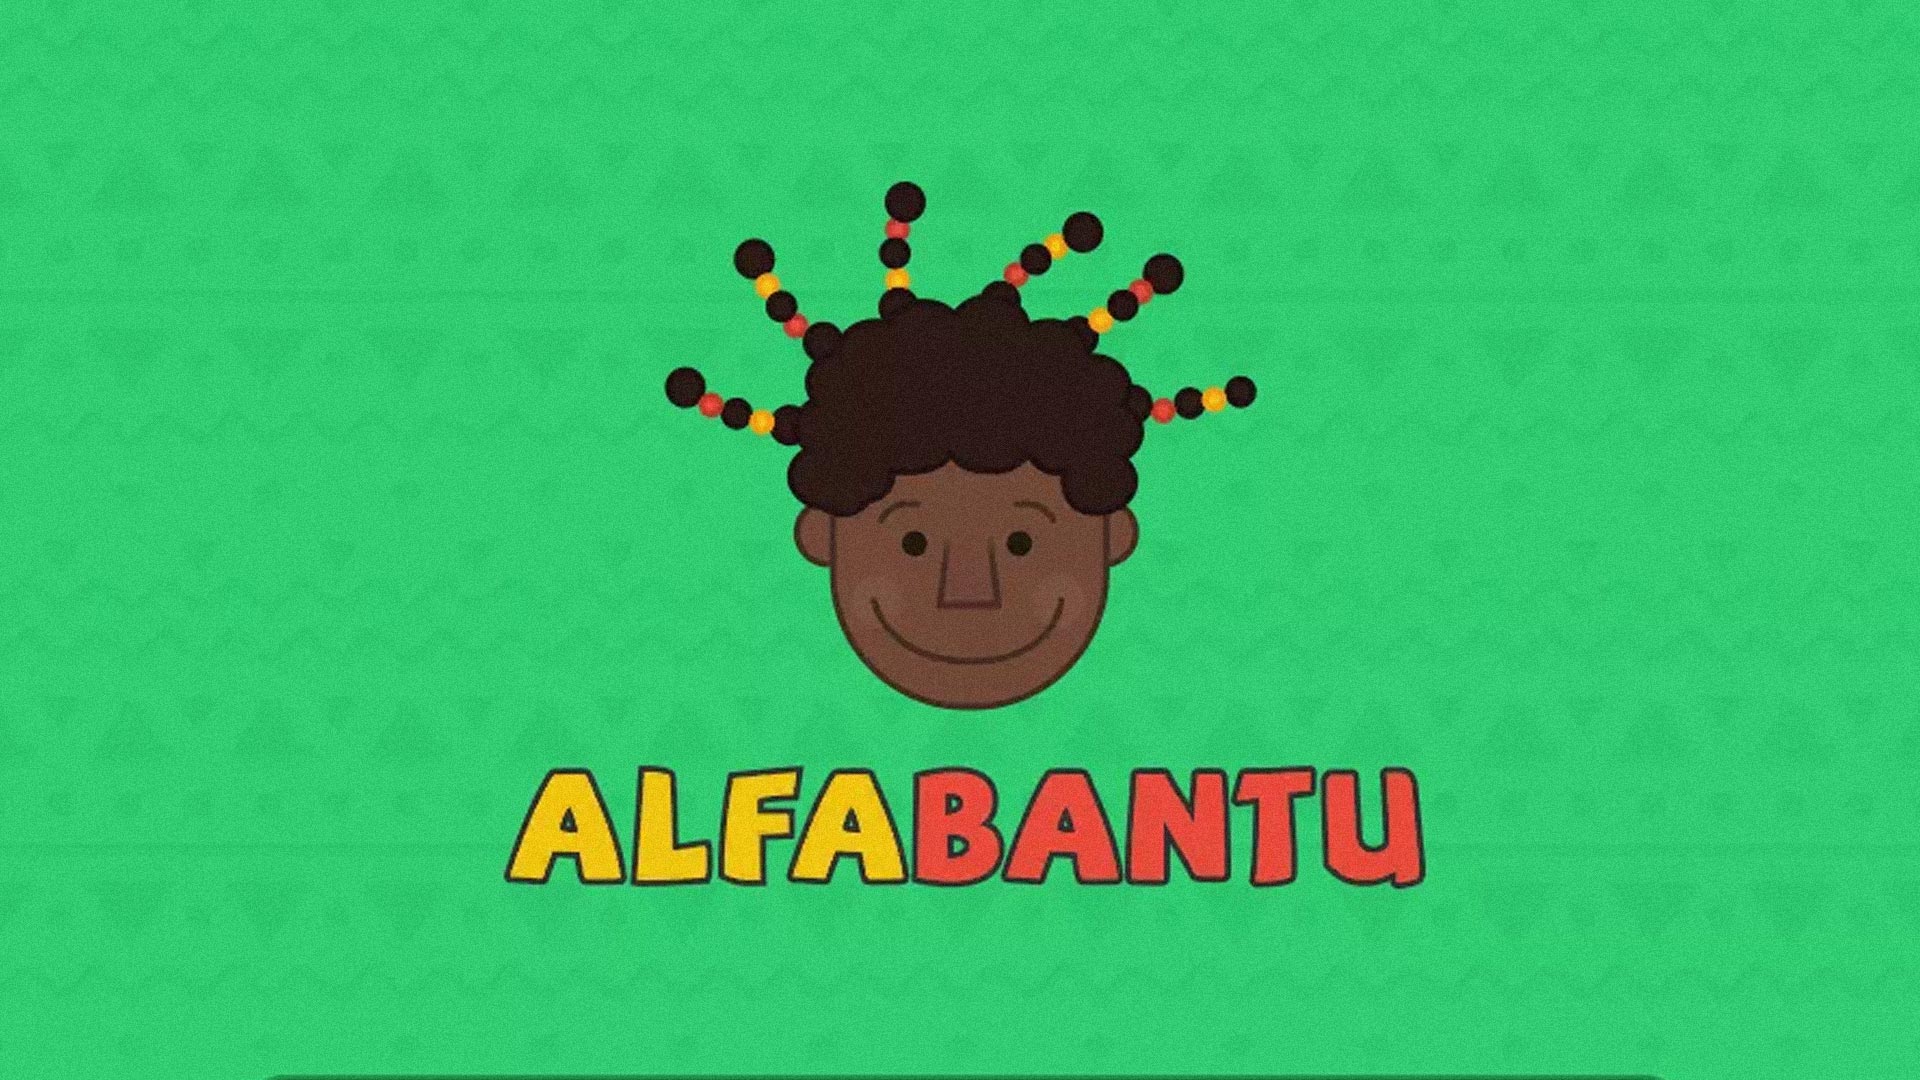 Fundo verde com o desenho de uma criança de cabelo crespo e o logo do Alfabantu